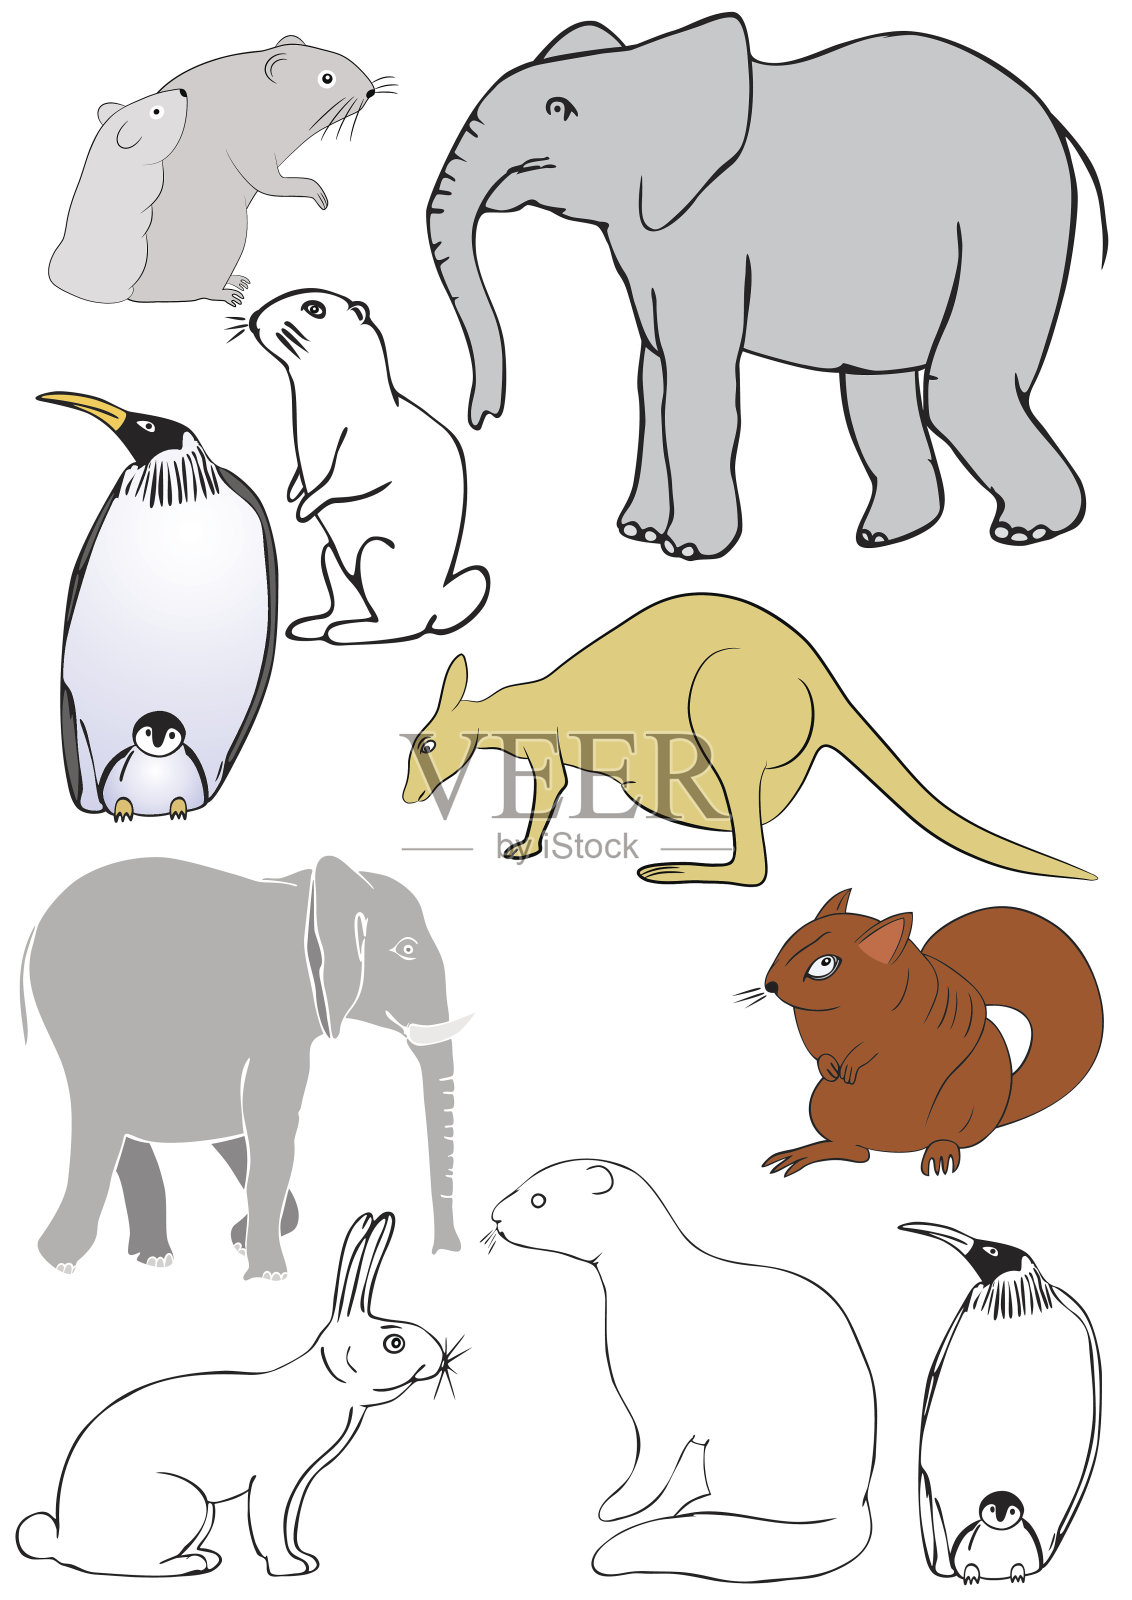 不同向量的动物插画图片素材